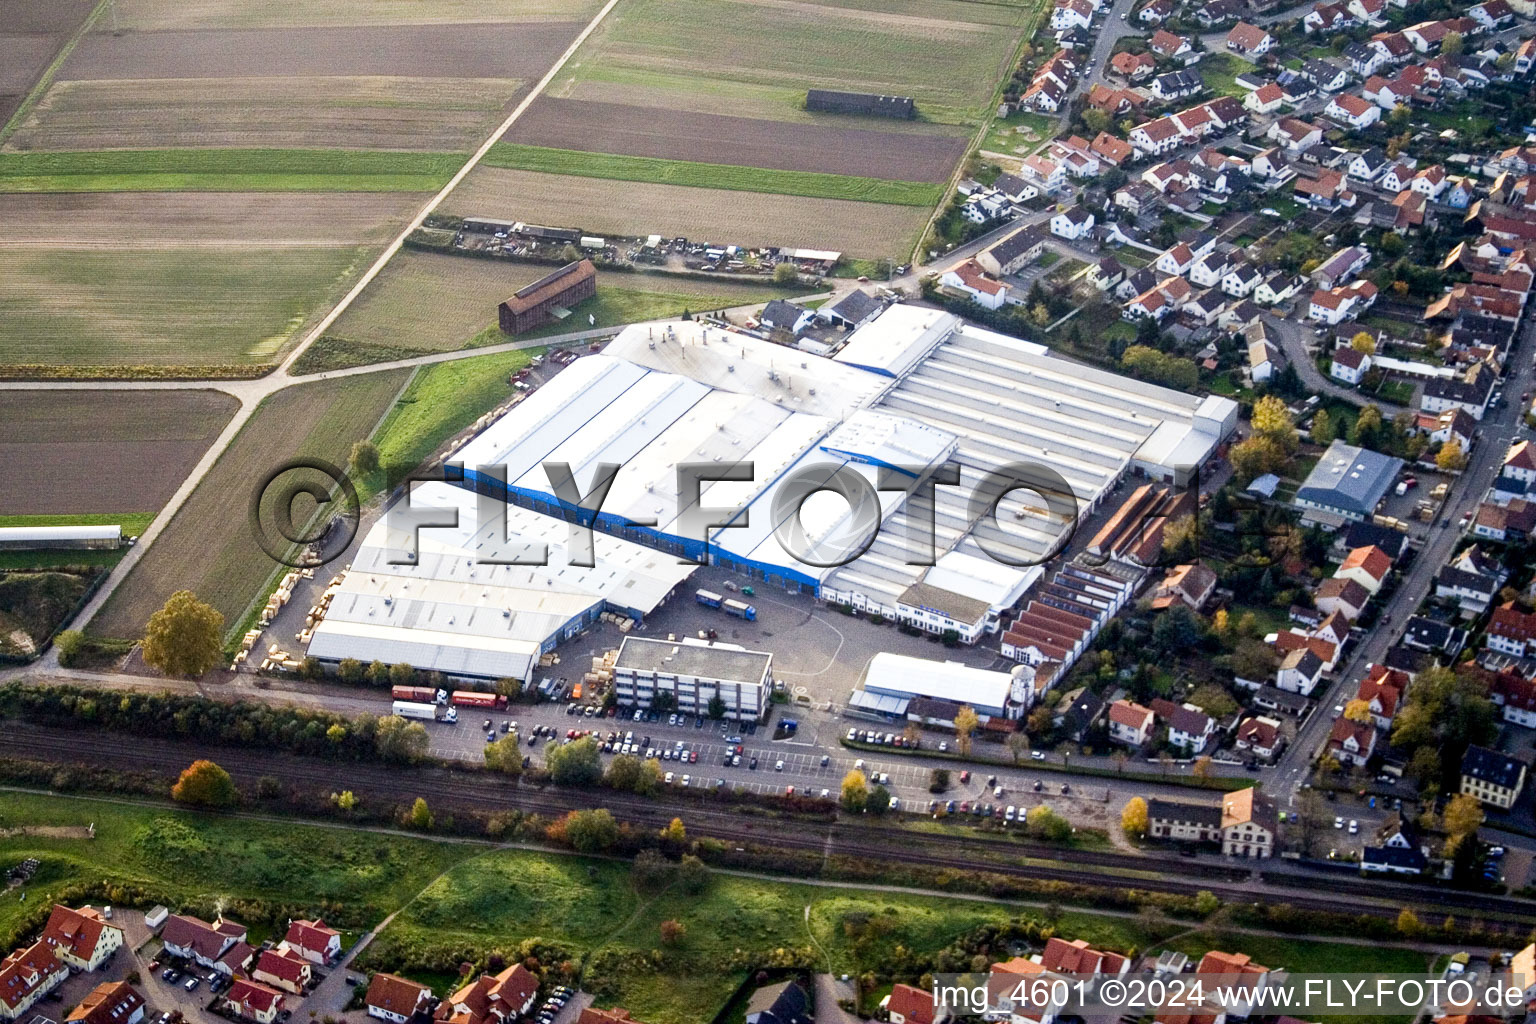 Building and production halls on the premises of Kardex Remstar Produktion Deutschland GmbH Kardex-Platz in the district Sondernheim in Bellheim in the state Rhineland-Palatinate